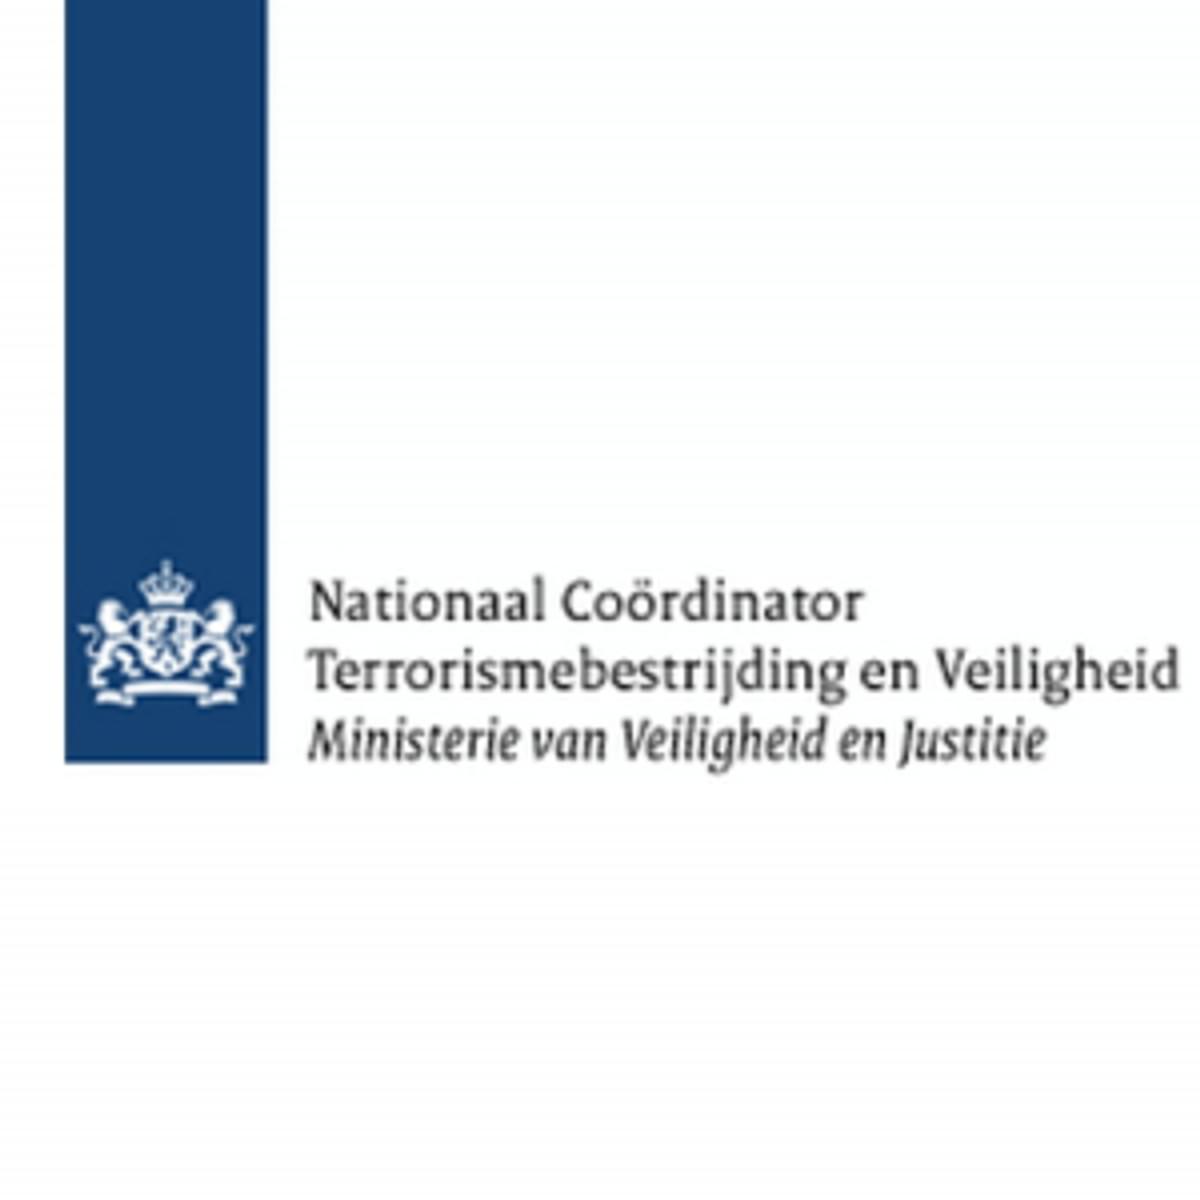 NCTV: Digitale dreiging in Nederland neemt toe image